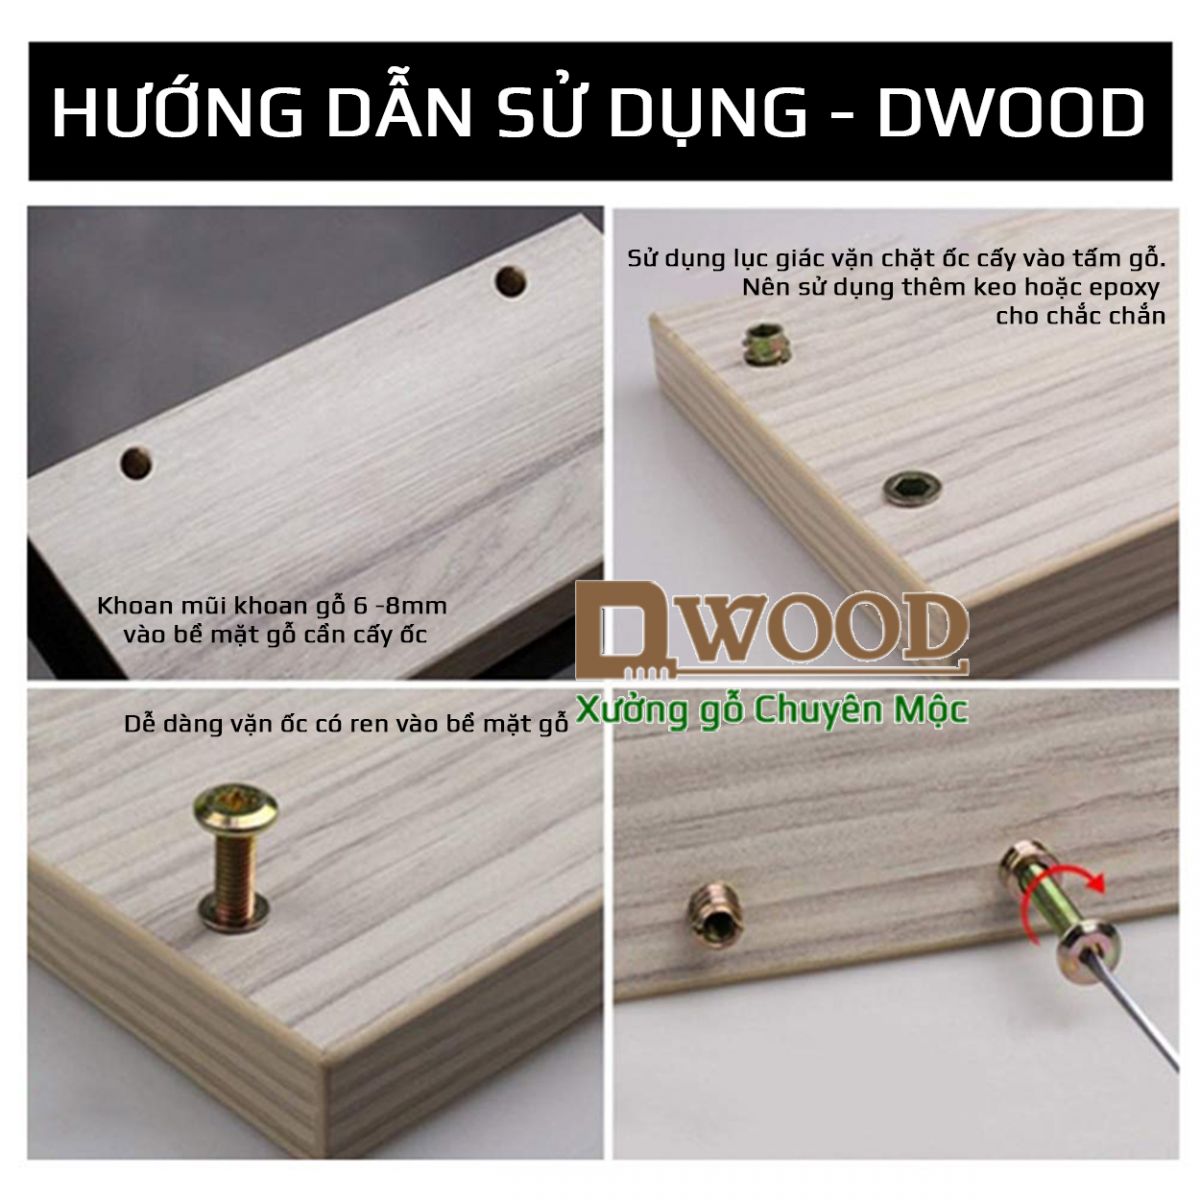 Ốc cấy Dwood  mạ kẽm M6x13 - cho mặt gỗ dày từ 13mm (có vành)